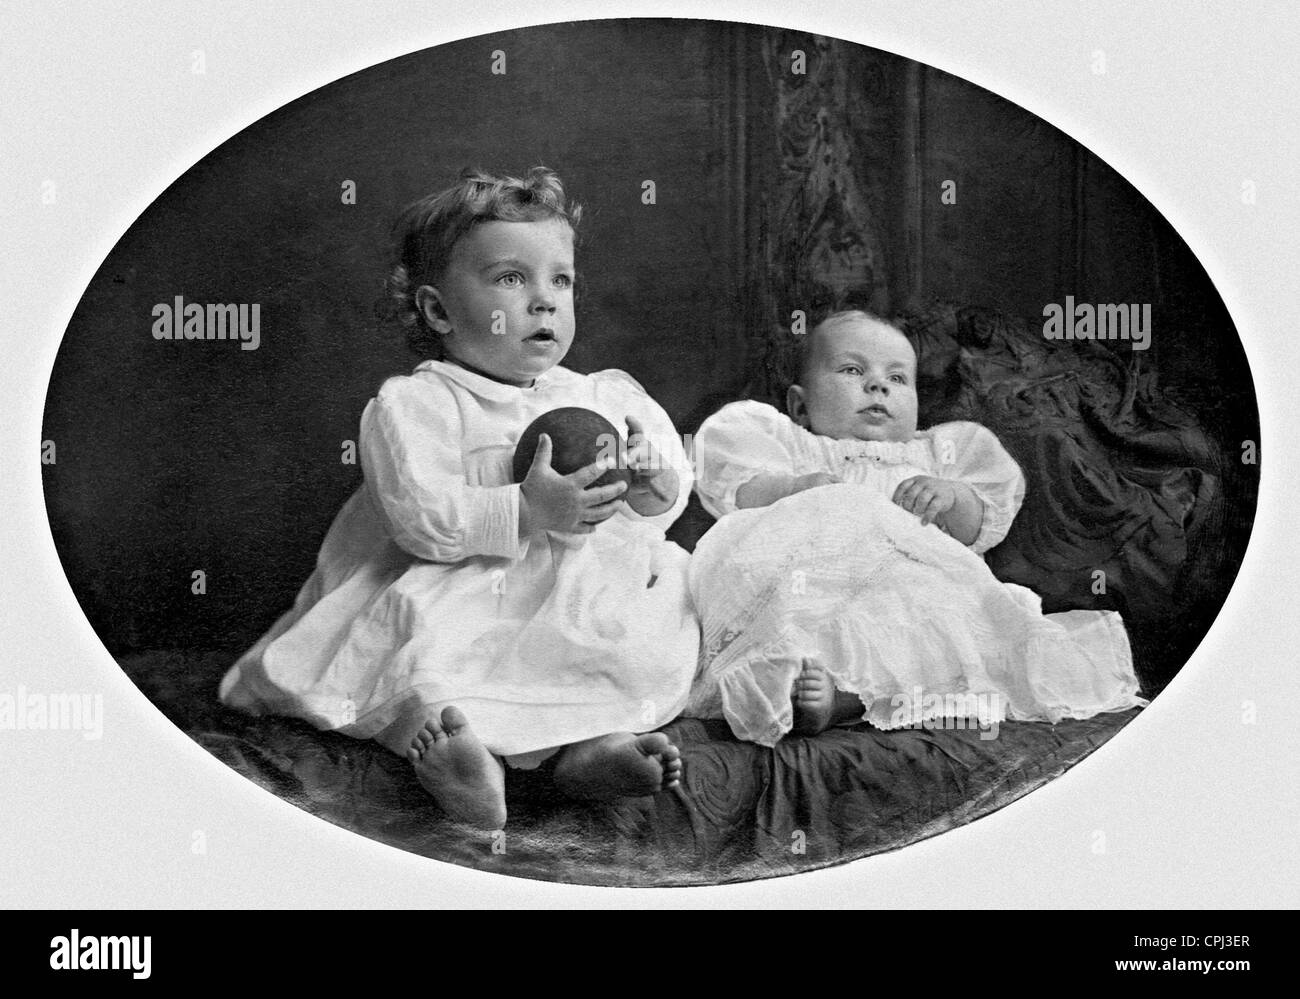 Prinz Gustav Adolf und Prinz Sigward von Schweden, 1908 Stockfoto